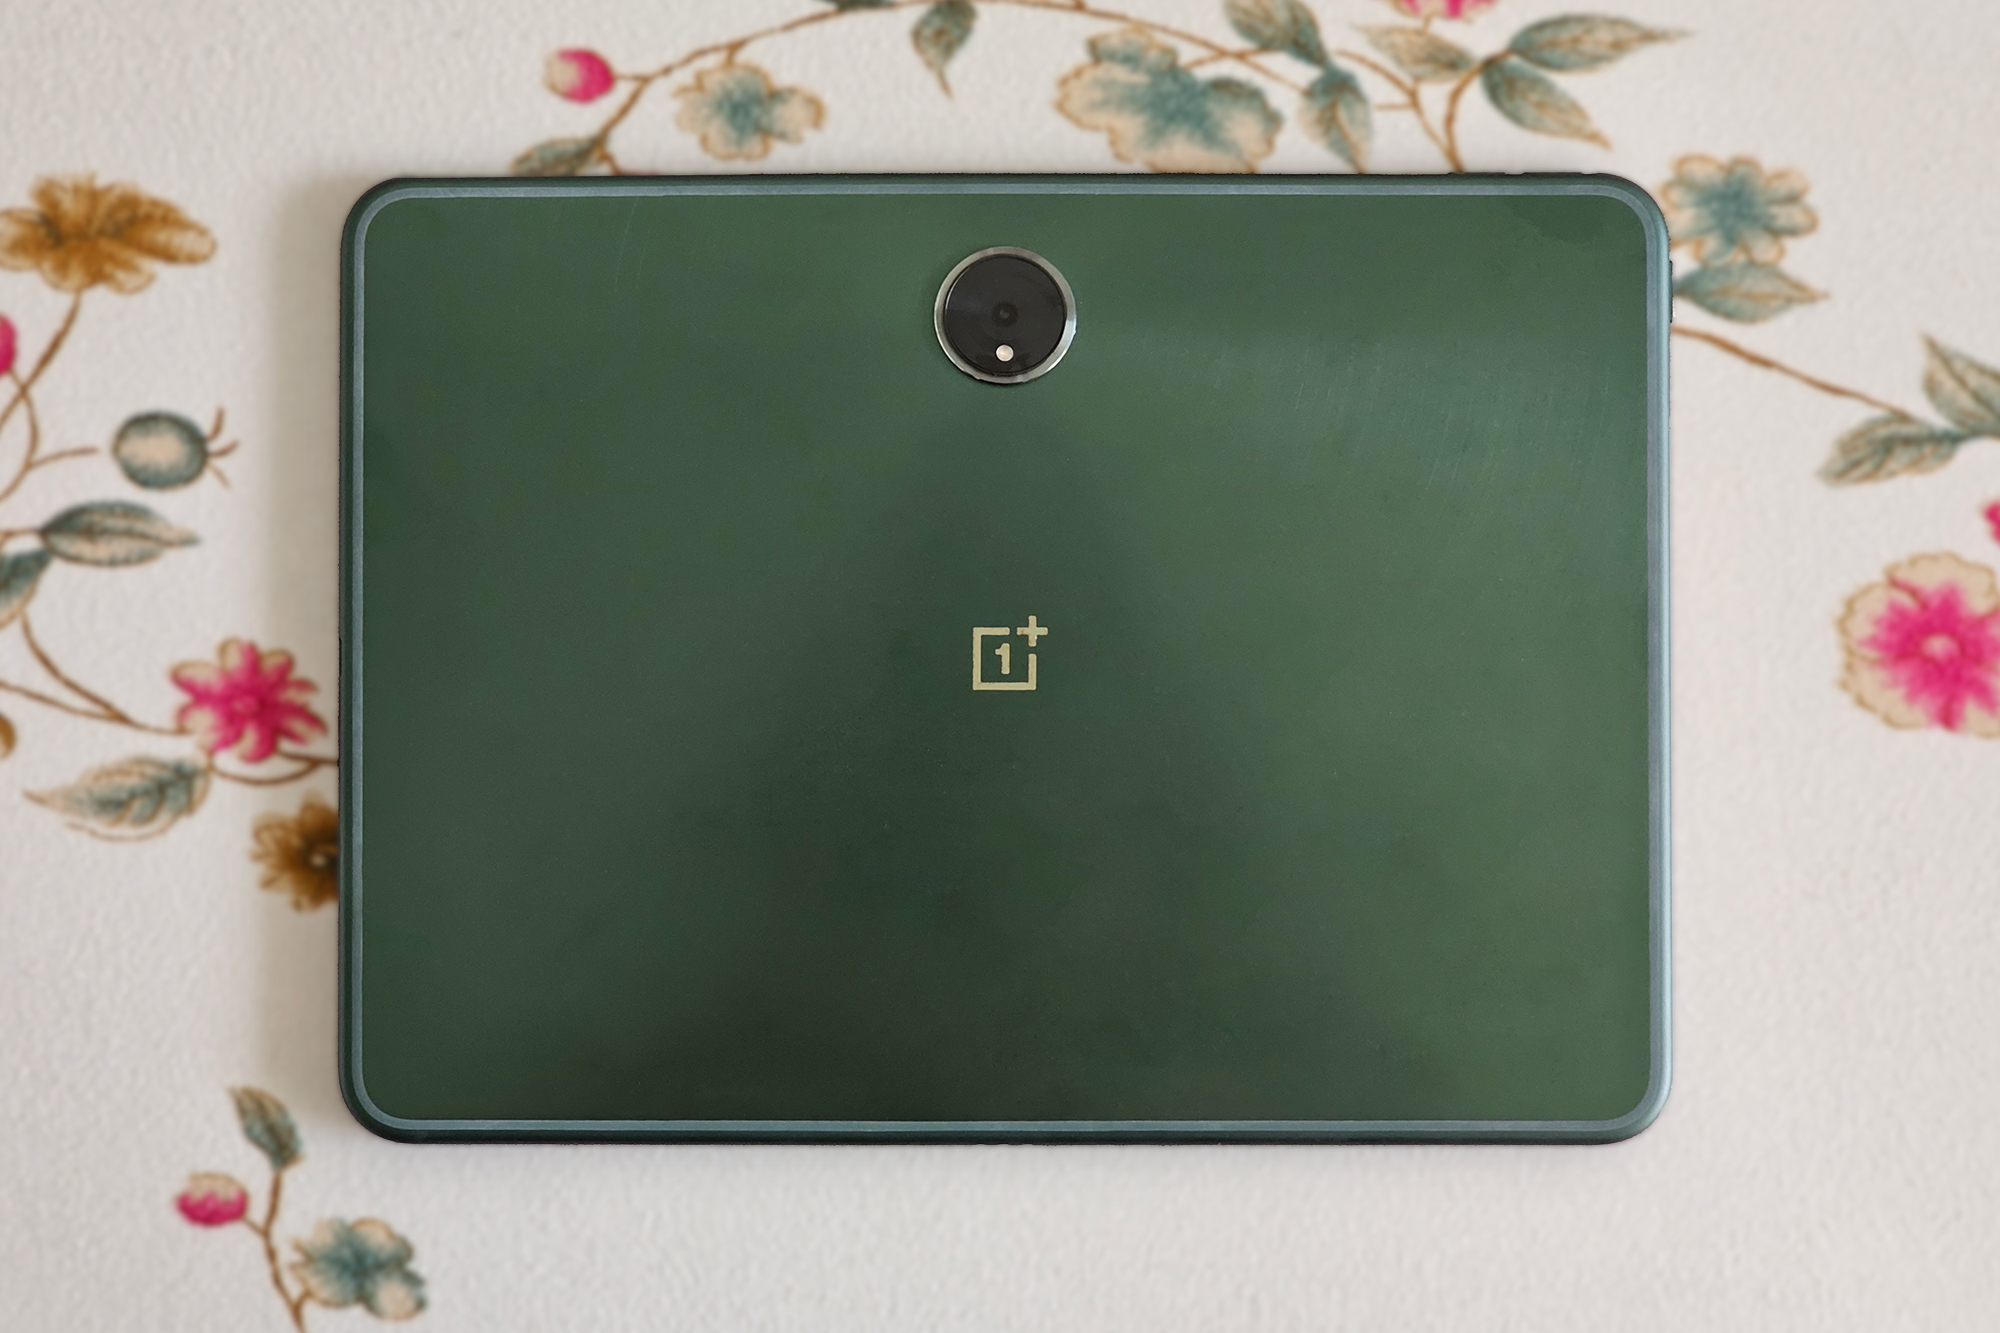 Green OnePlus Pad Android Tablet em uma superfície plana.